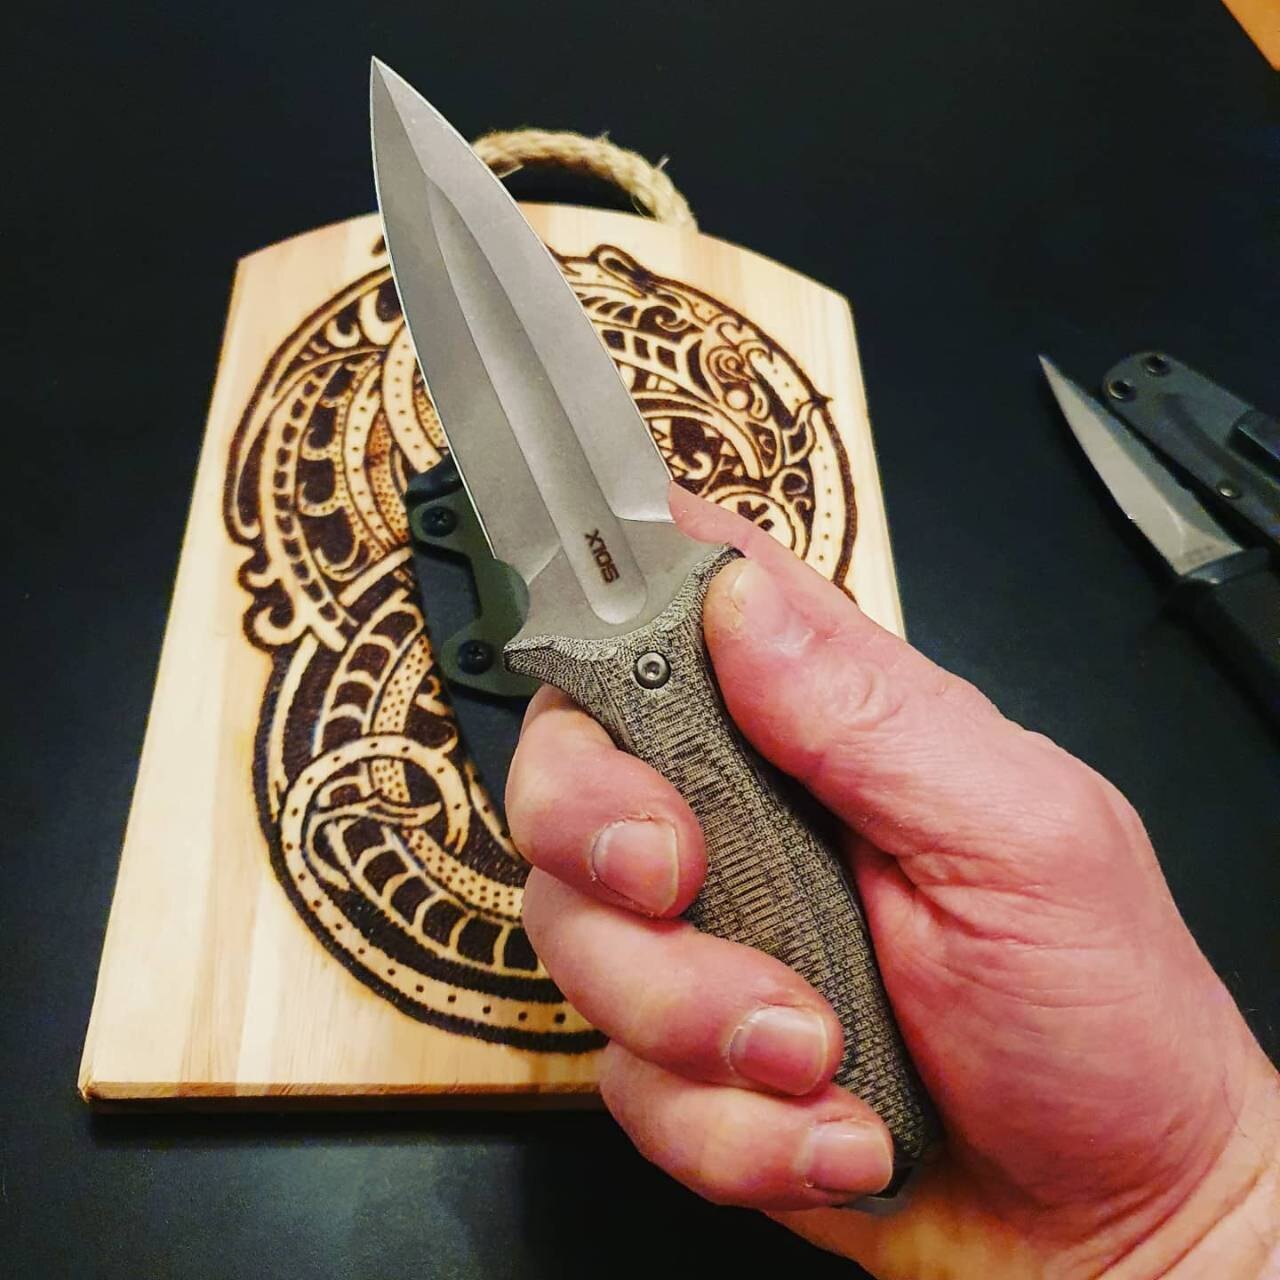 Ножи nc custom купить